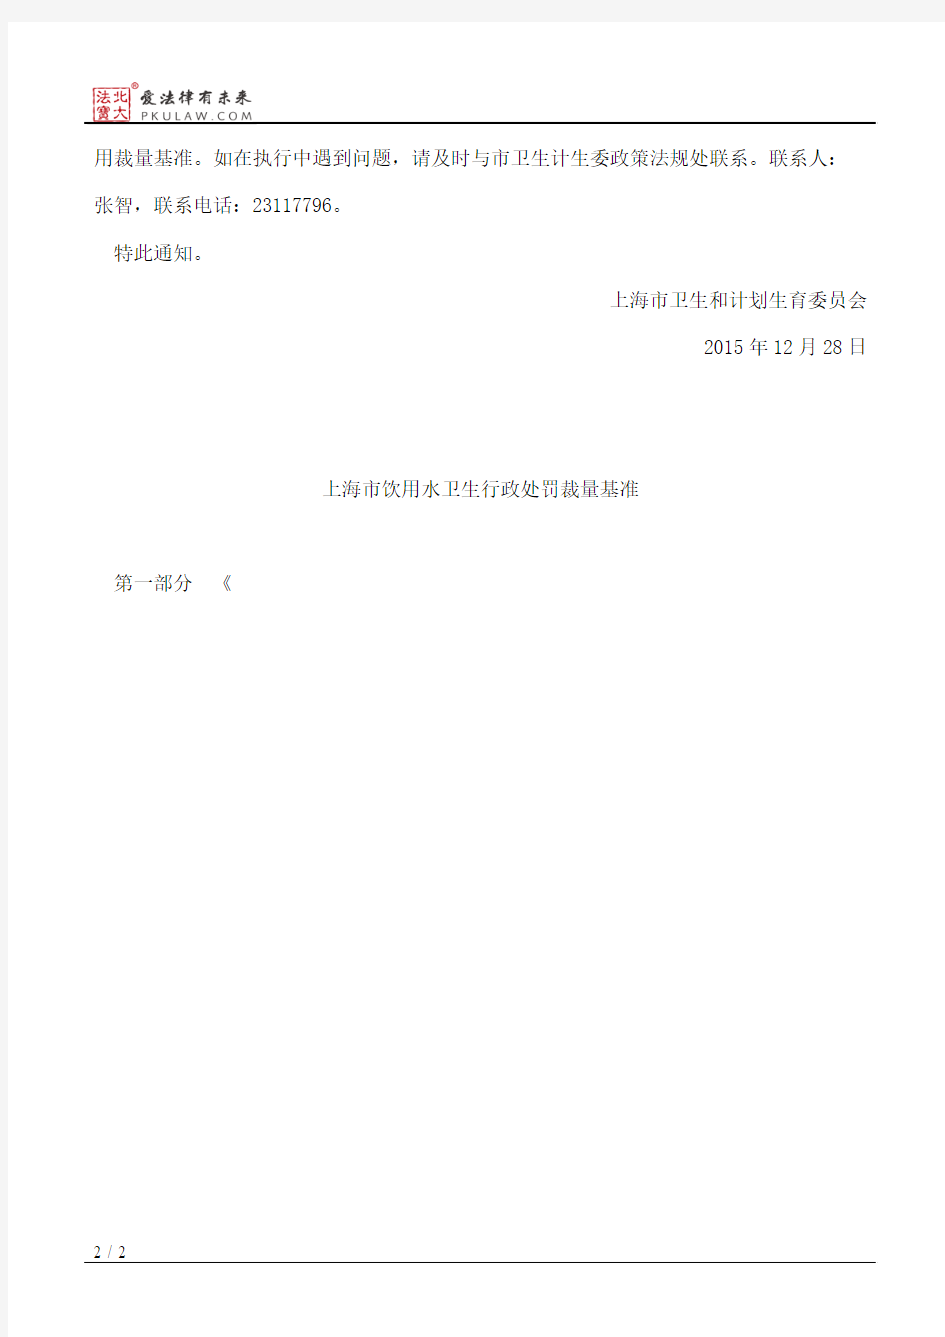 上海市卫生和计划生育委员会关于印发《上海市饮用水卫生行政处罚